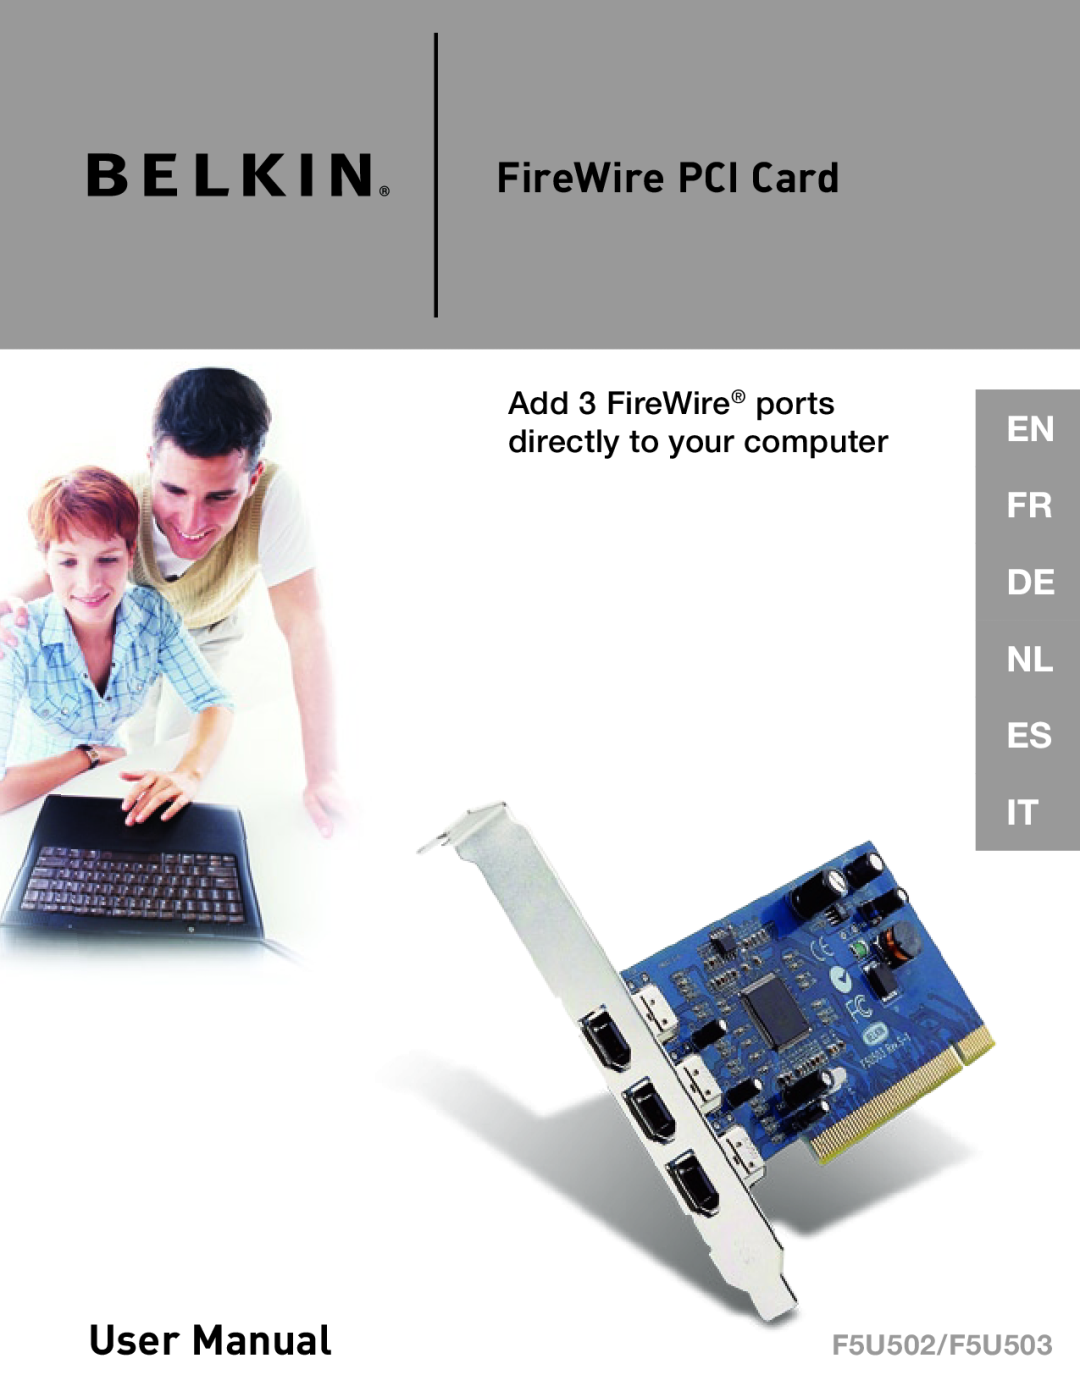 Belkin user manual FireWire PCI Card, User Manual, En Fr De Nl Es It, F5U502/F5U503 